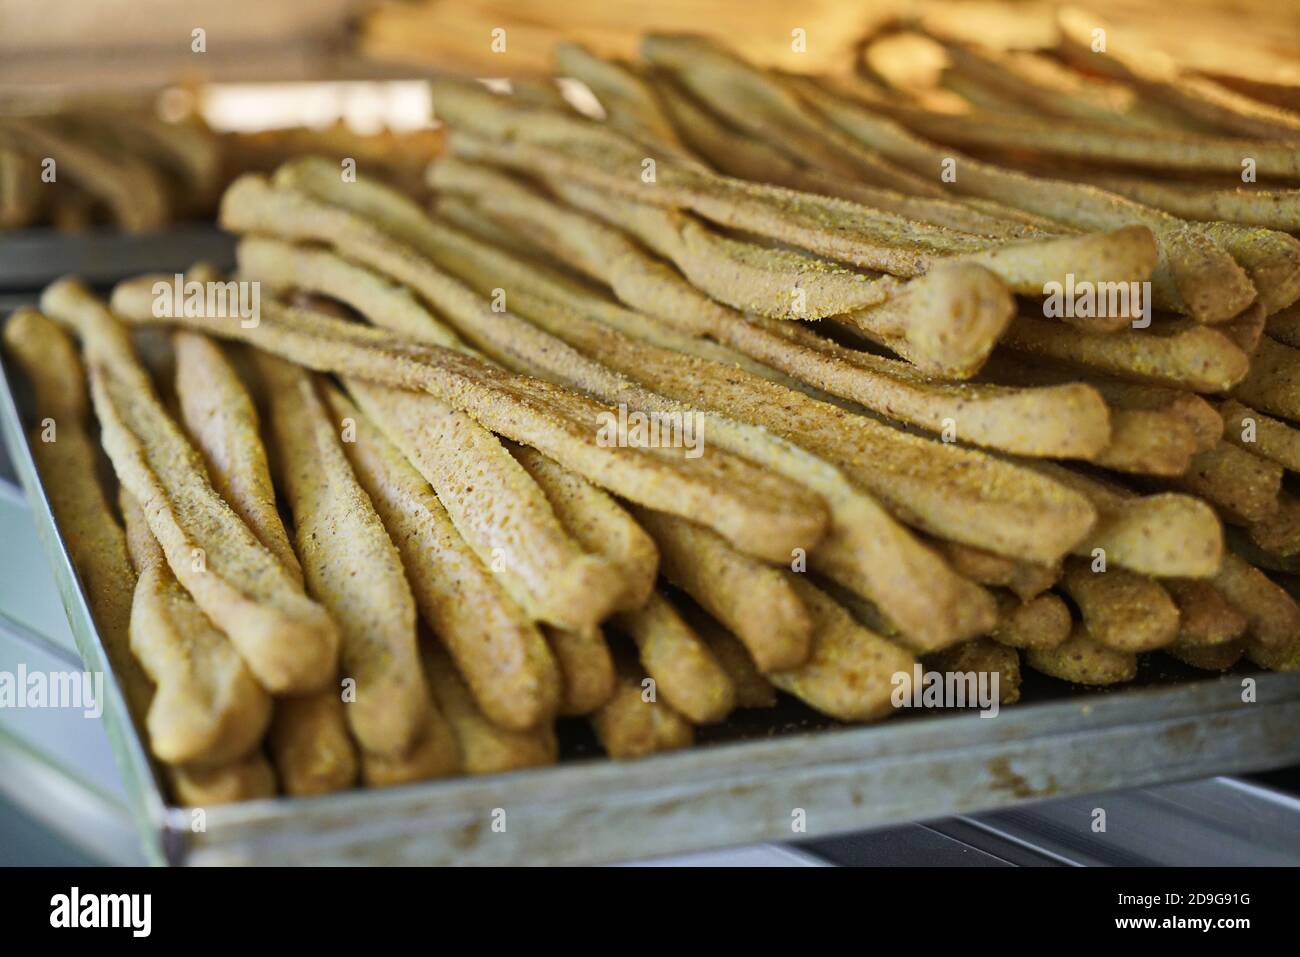 Whole corn bread sticks in the oven Stock Photo